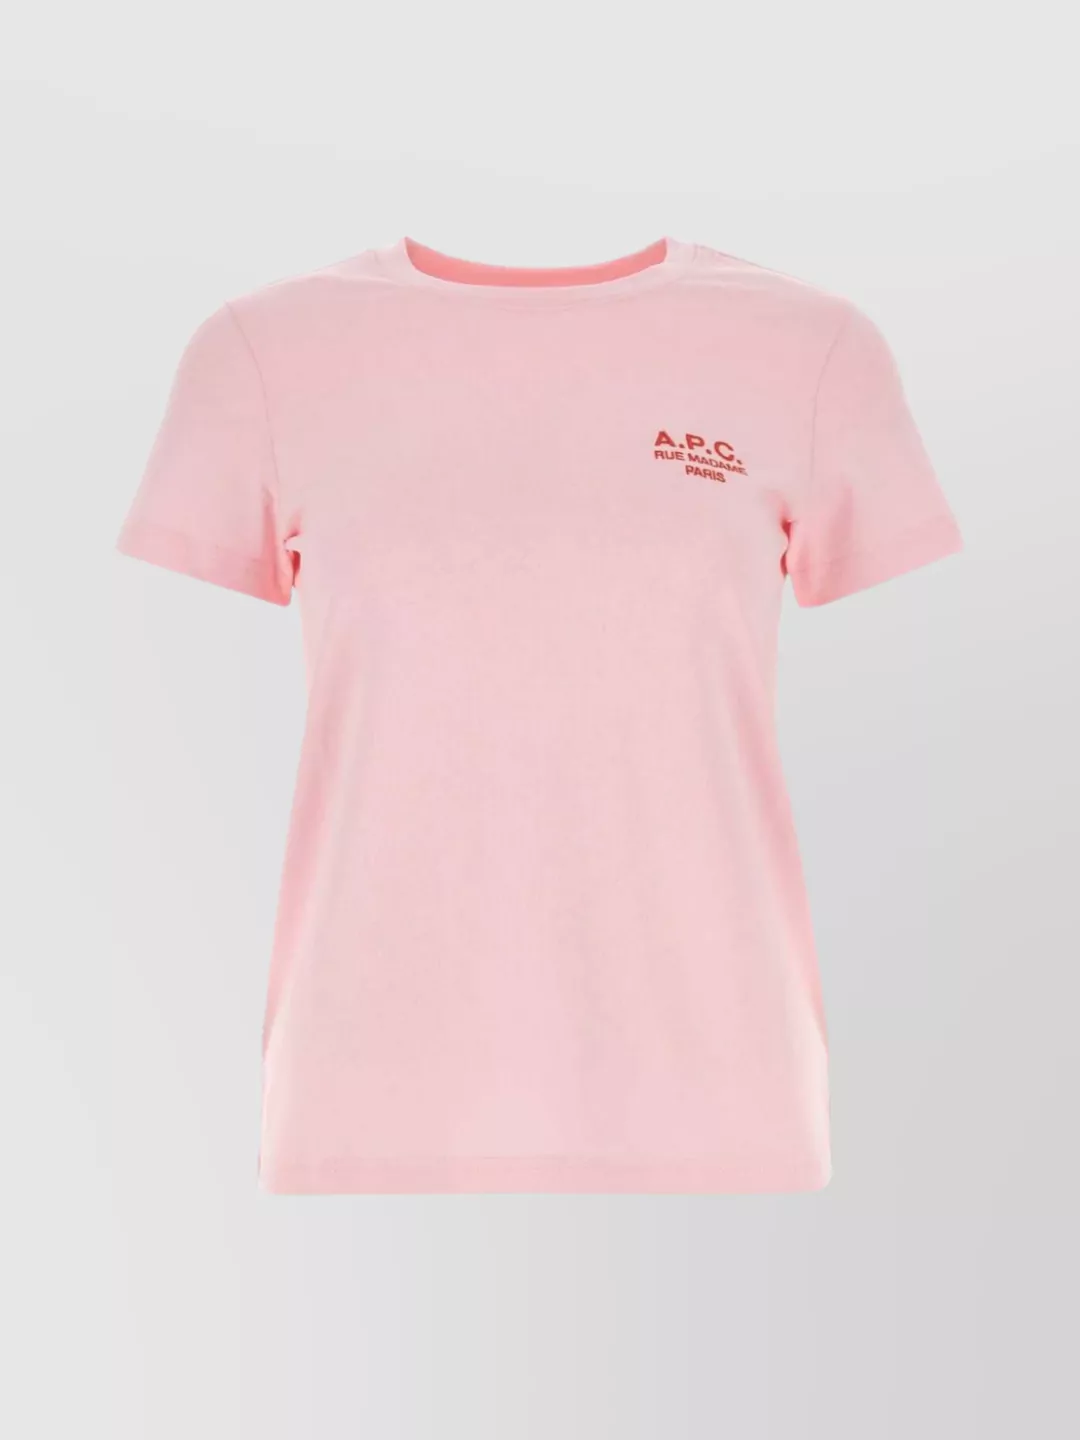 Shop Apc Denise Crew Neck T-shirt